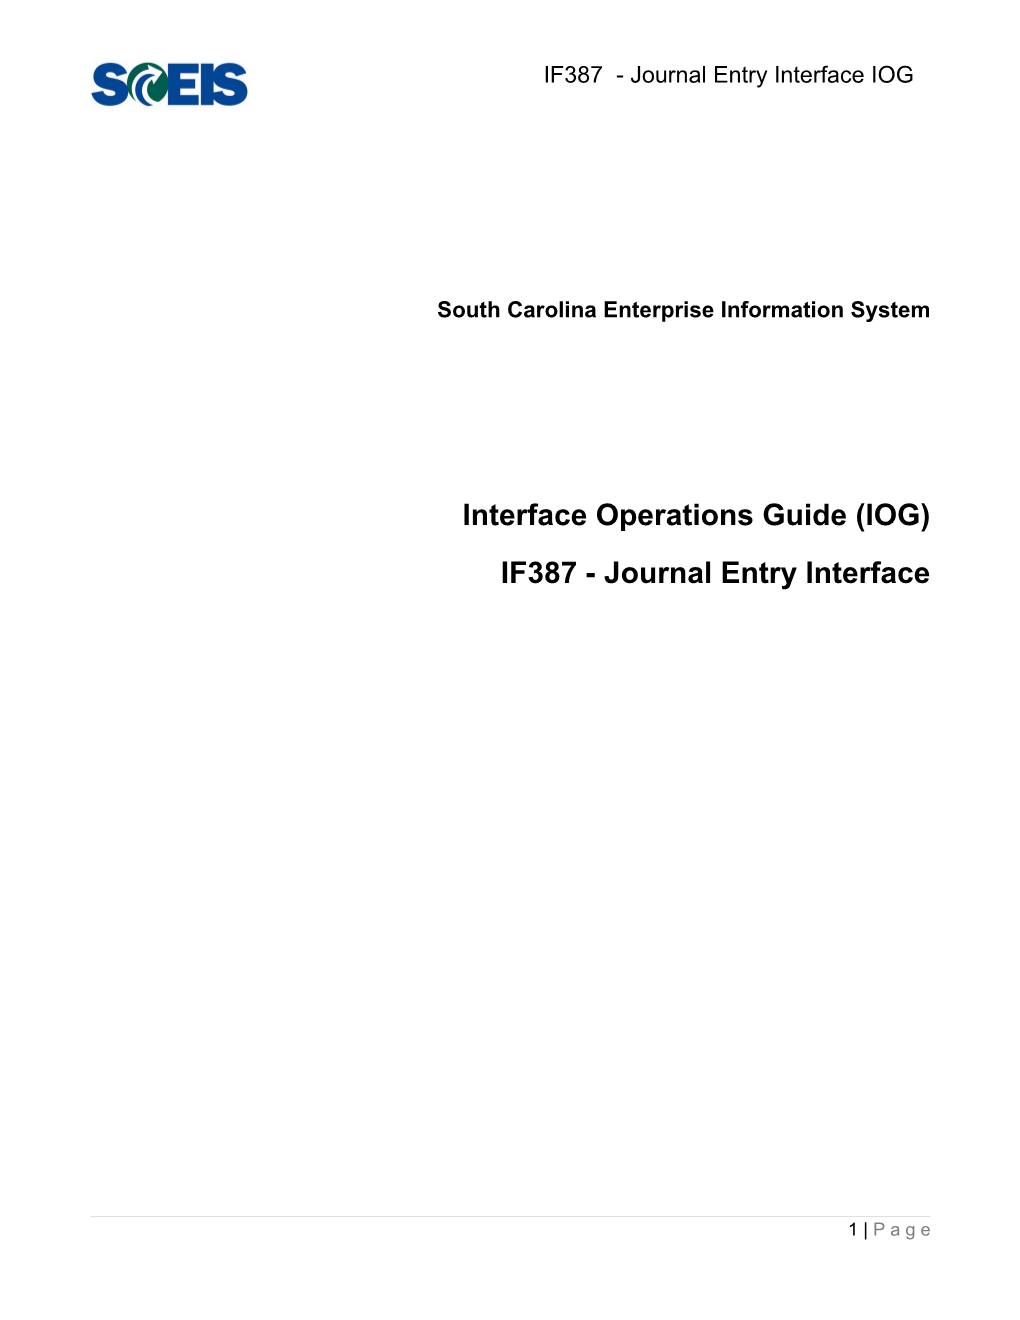 IF387 IOG - Journal Entry Inbound Interface